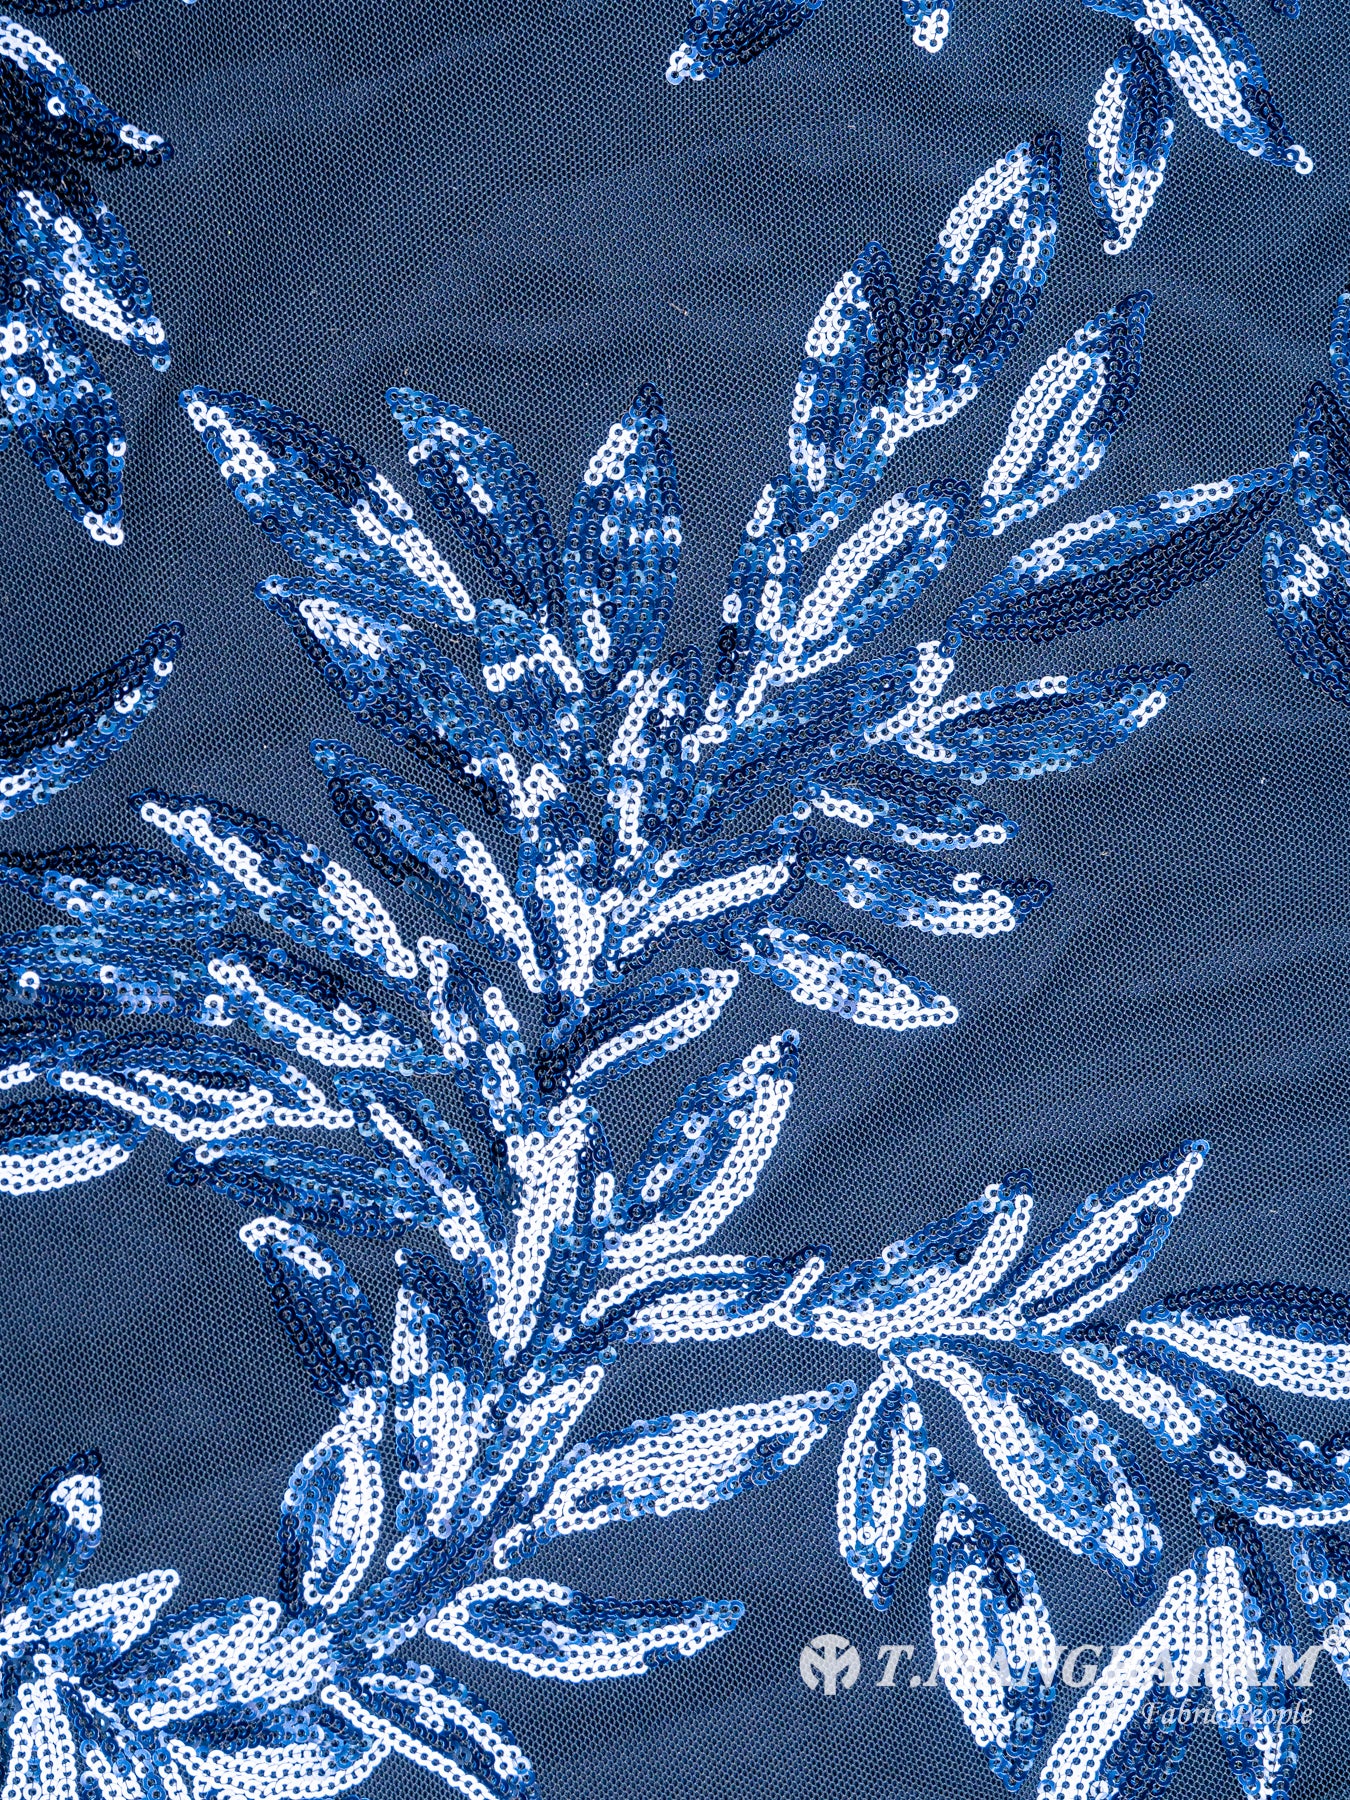 Blue Fancy Net Fabric - EB3929 view-3